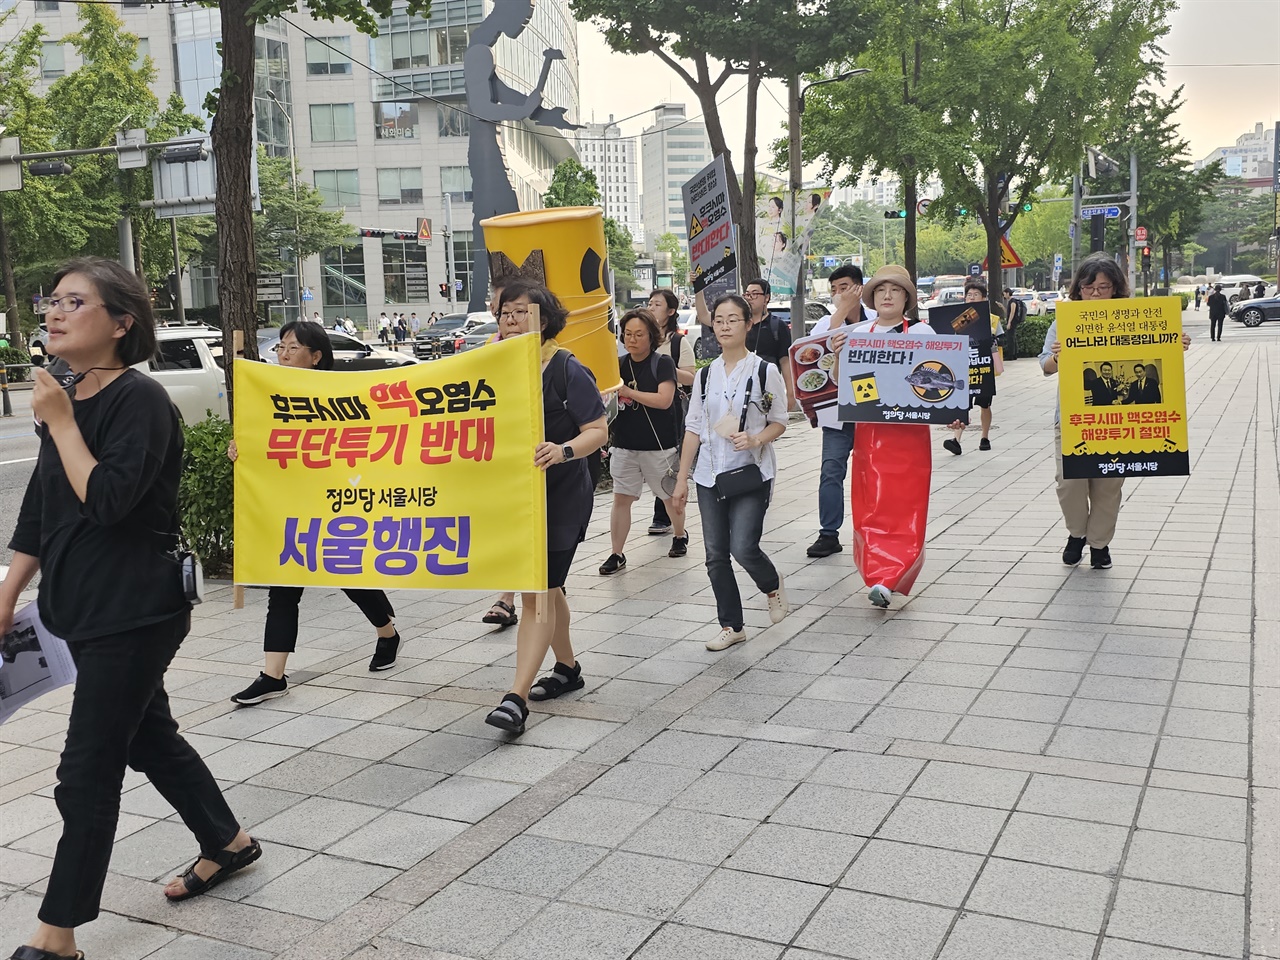 일본대사관을 향해 행진하는 참가자들에게 응원과 지지를 해 주시는 서울시민들을 만나기도 했습니다